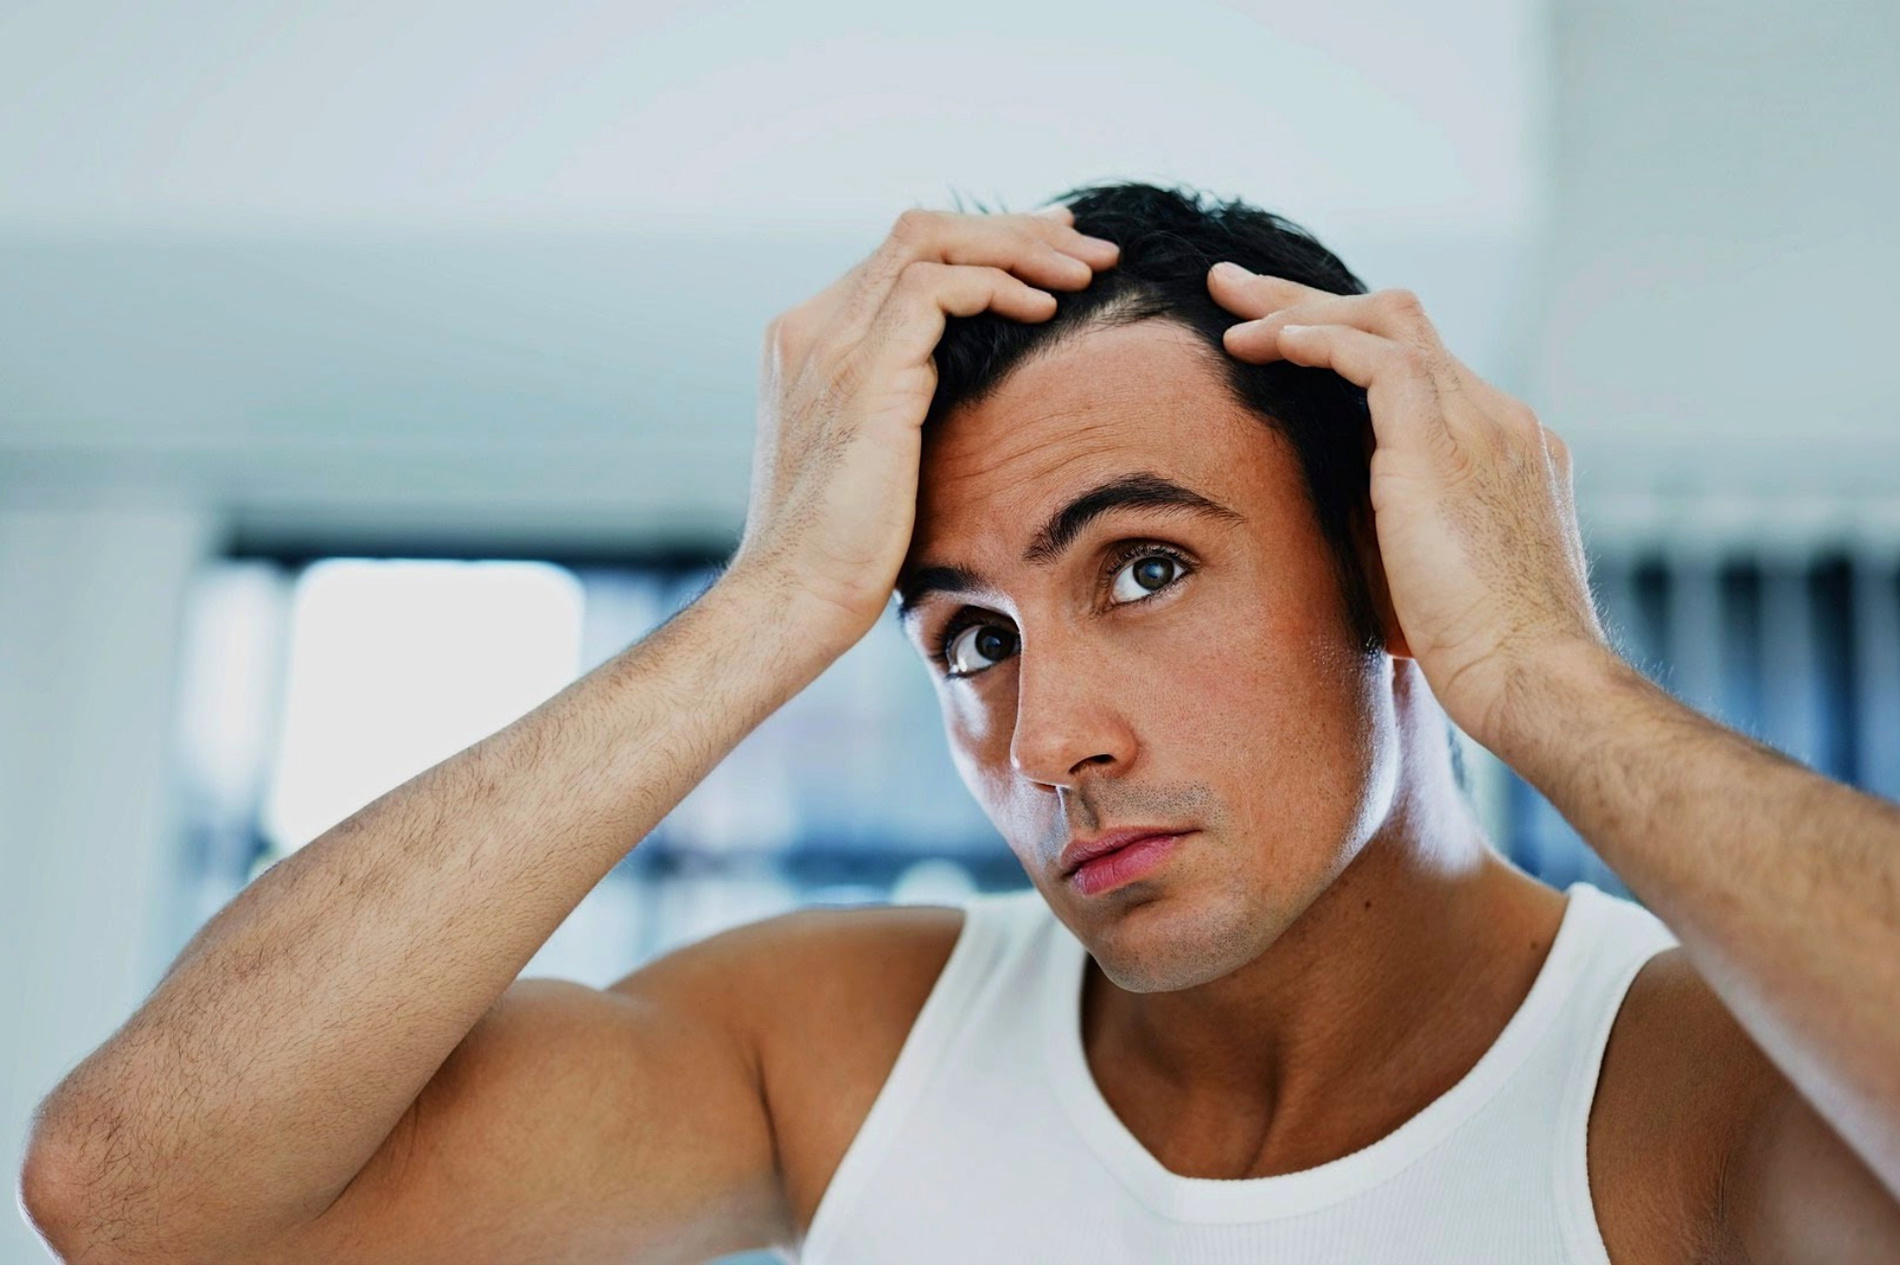 Creatine Hair Loss | Does Creatine Cause Hair Loss?